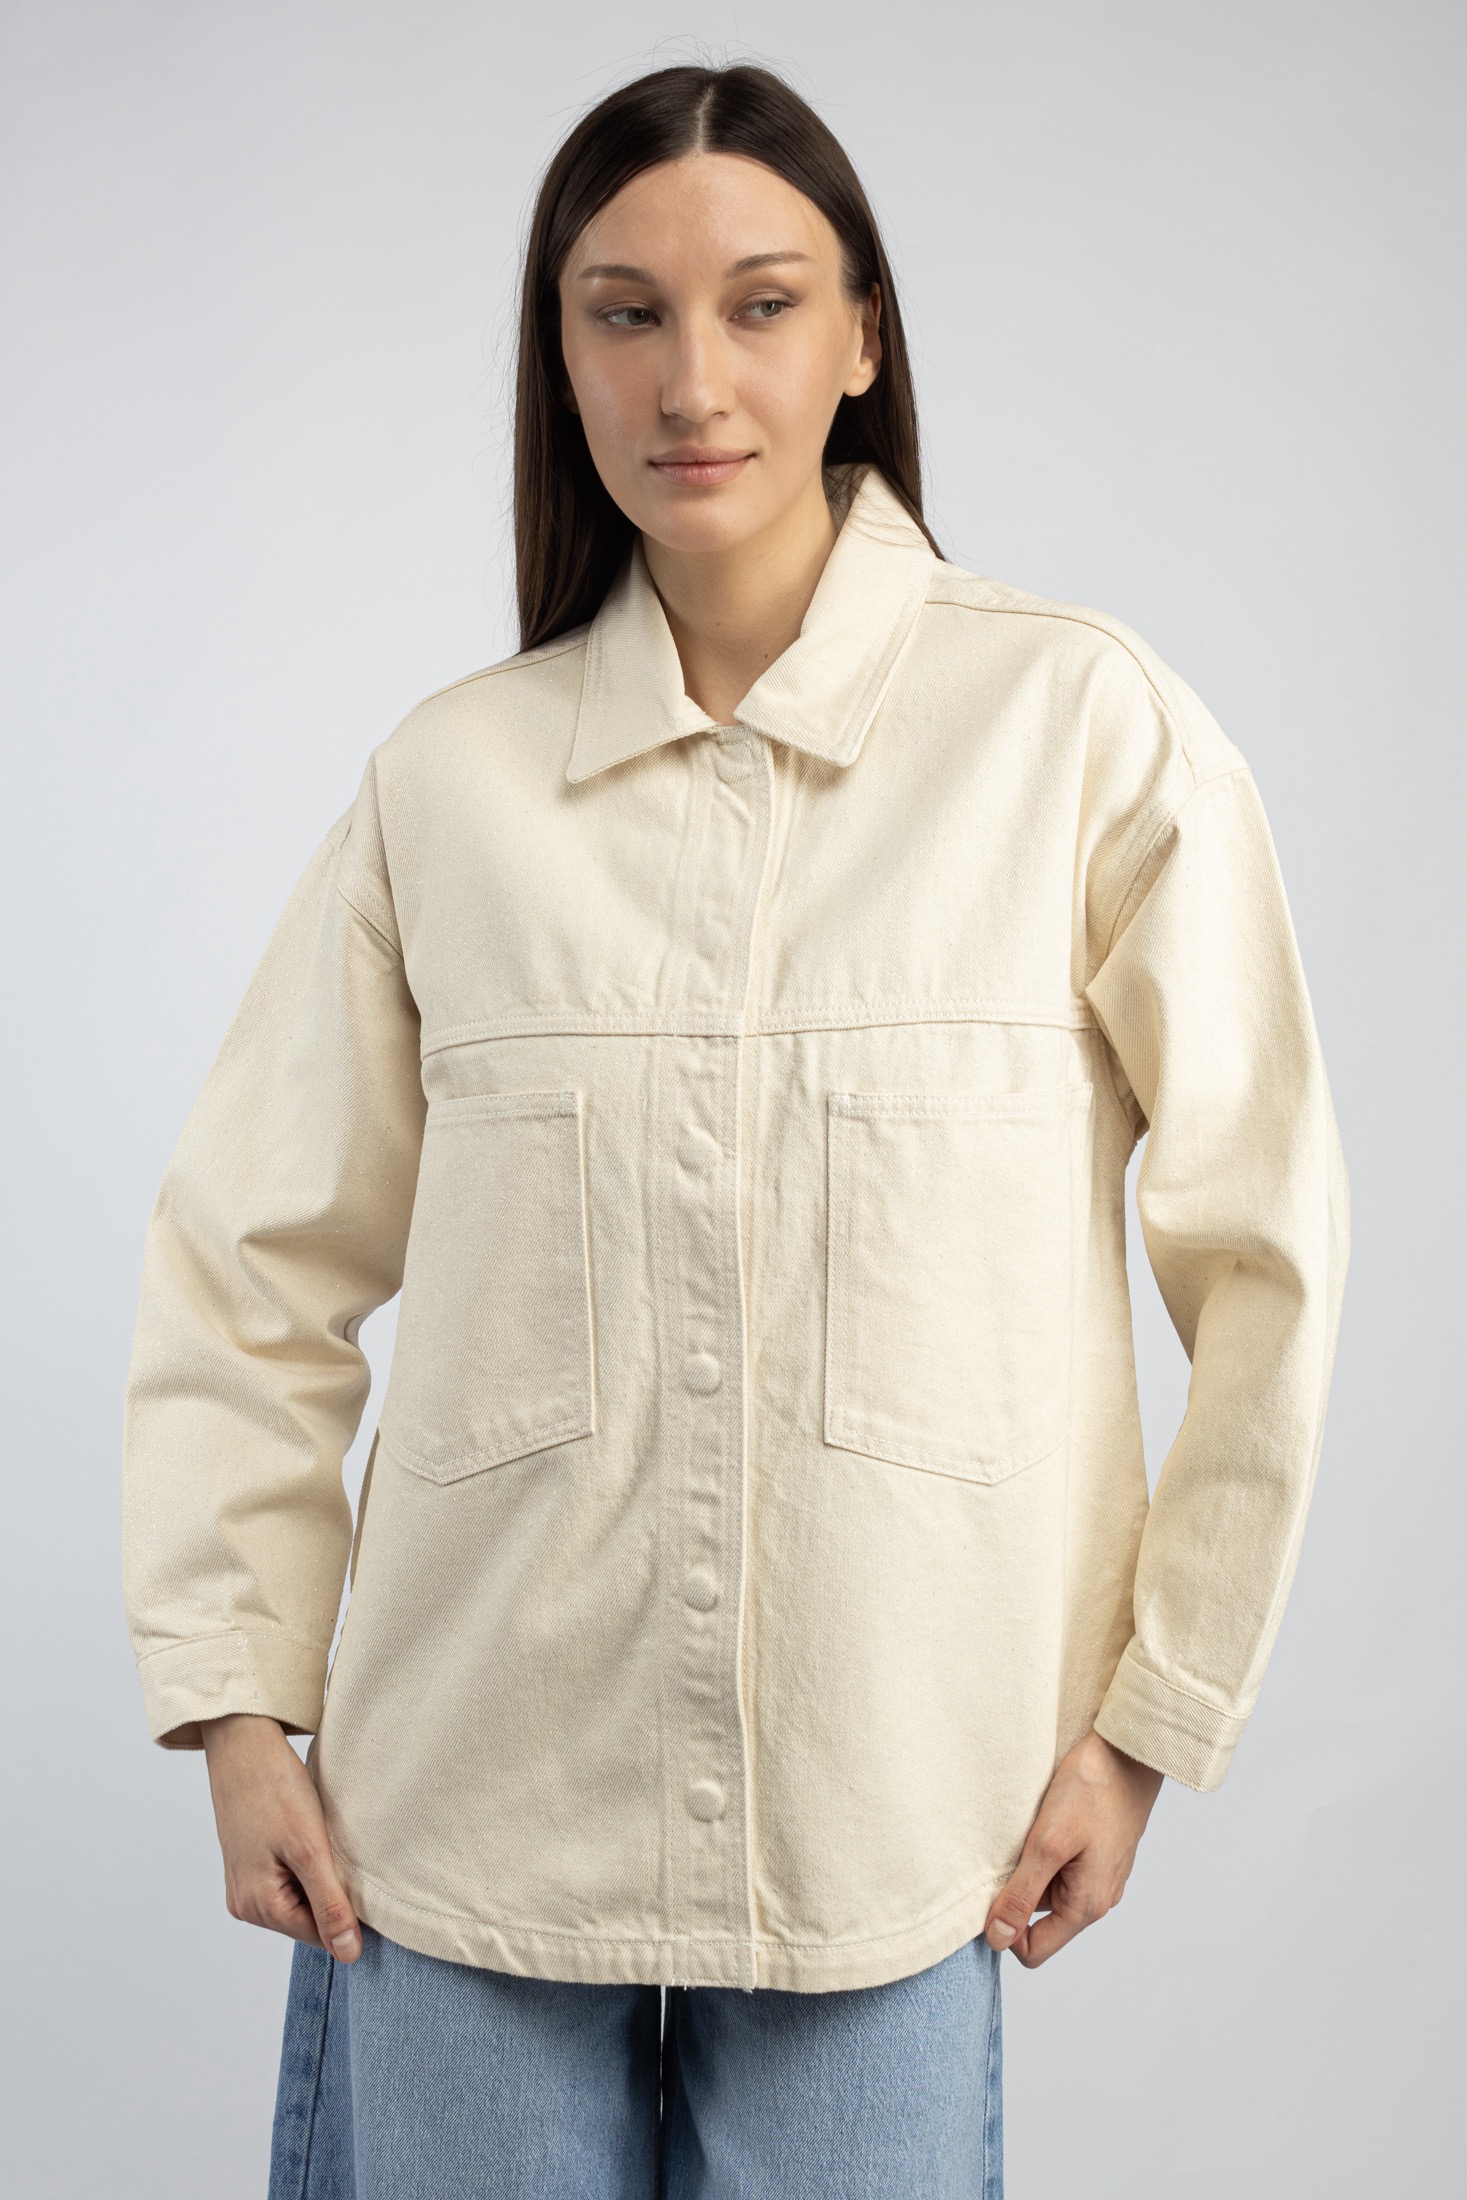 Джинсовая куртка женская Republika woman 2024-017 бежевая S